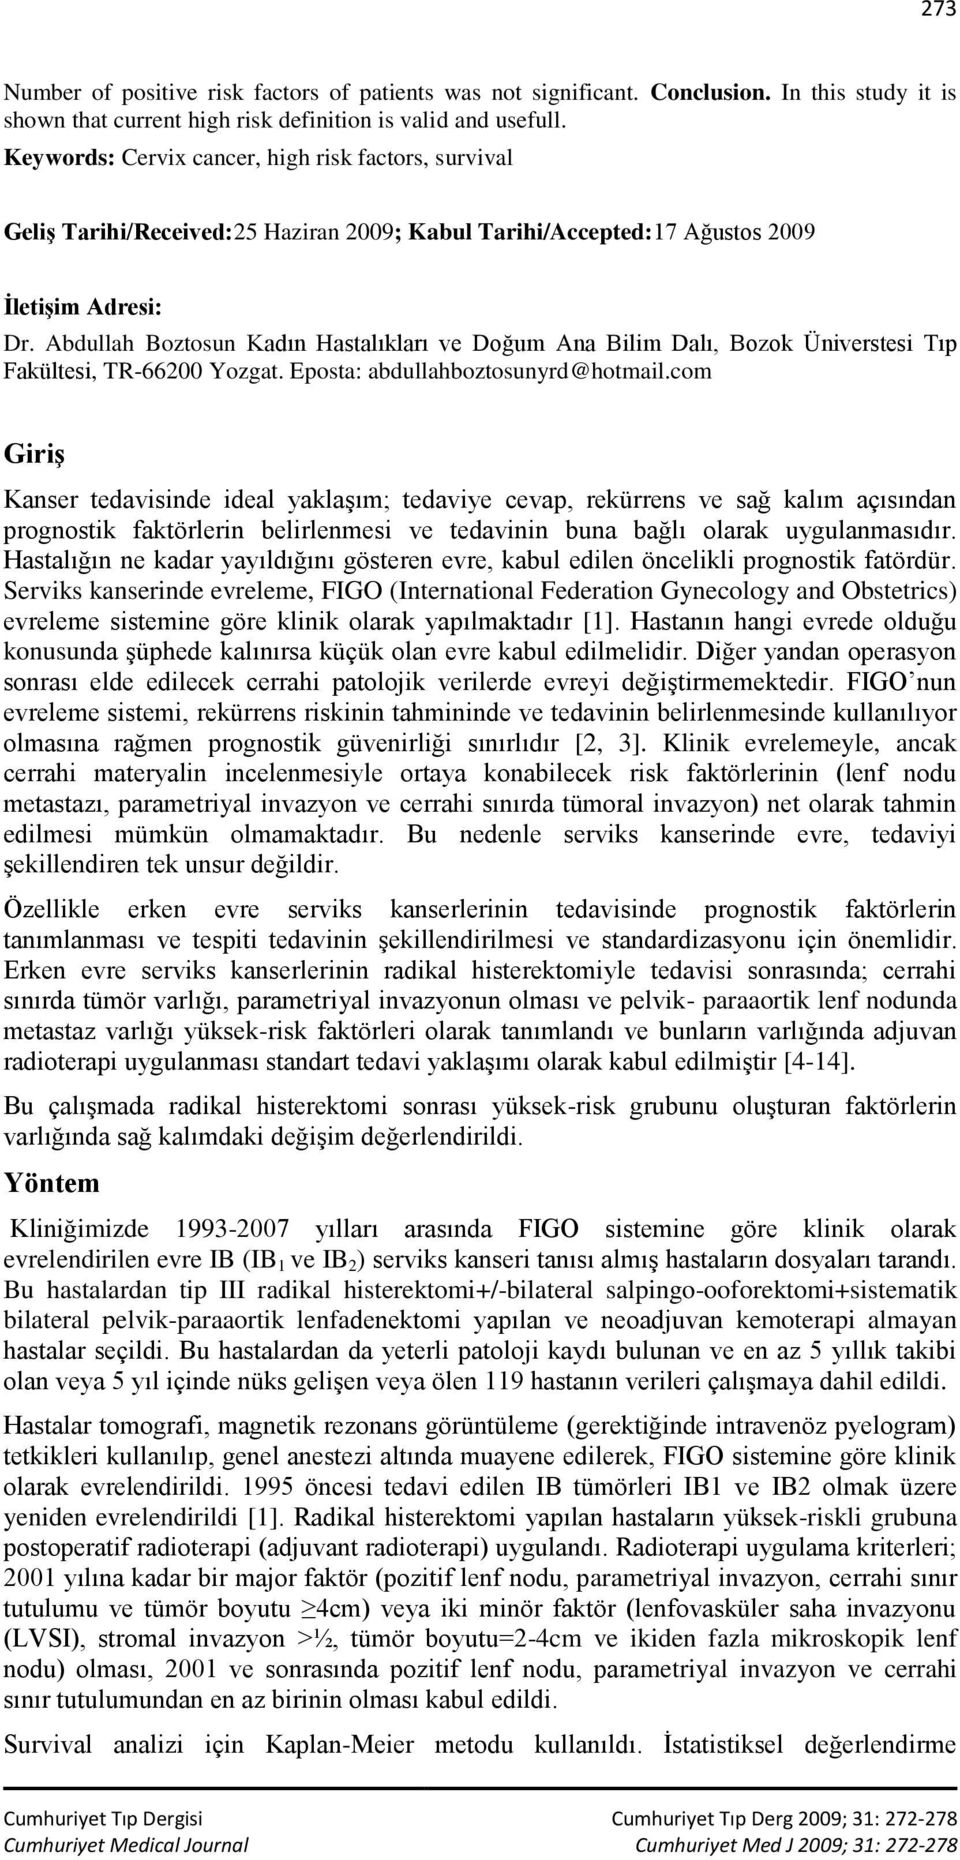 Abdullah Boztosun Kadın Hastalıkları ve Doğum Ana Bilim Dalı, Bozok Üniverstesi Tıp Fakültesi, TR-66200 Yozgat. Eposta: abdullahboztosunyrd@hotmail.